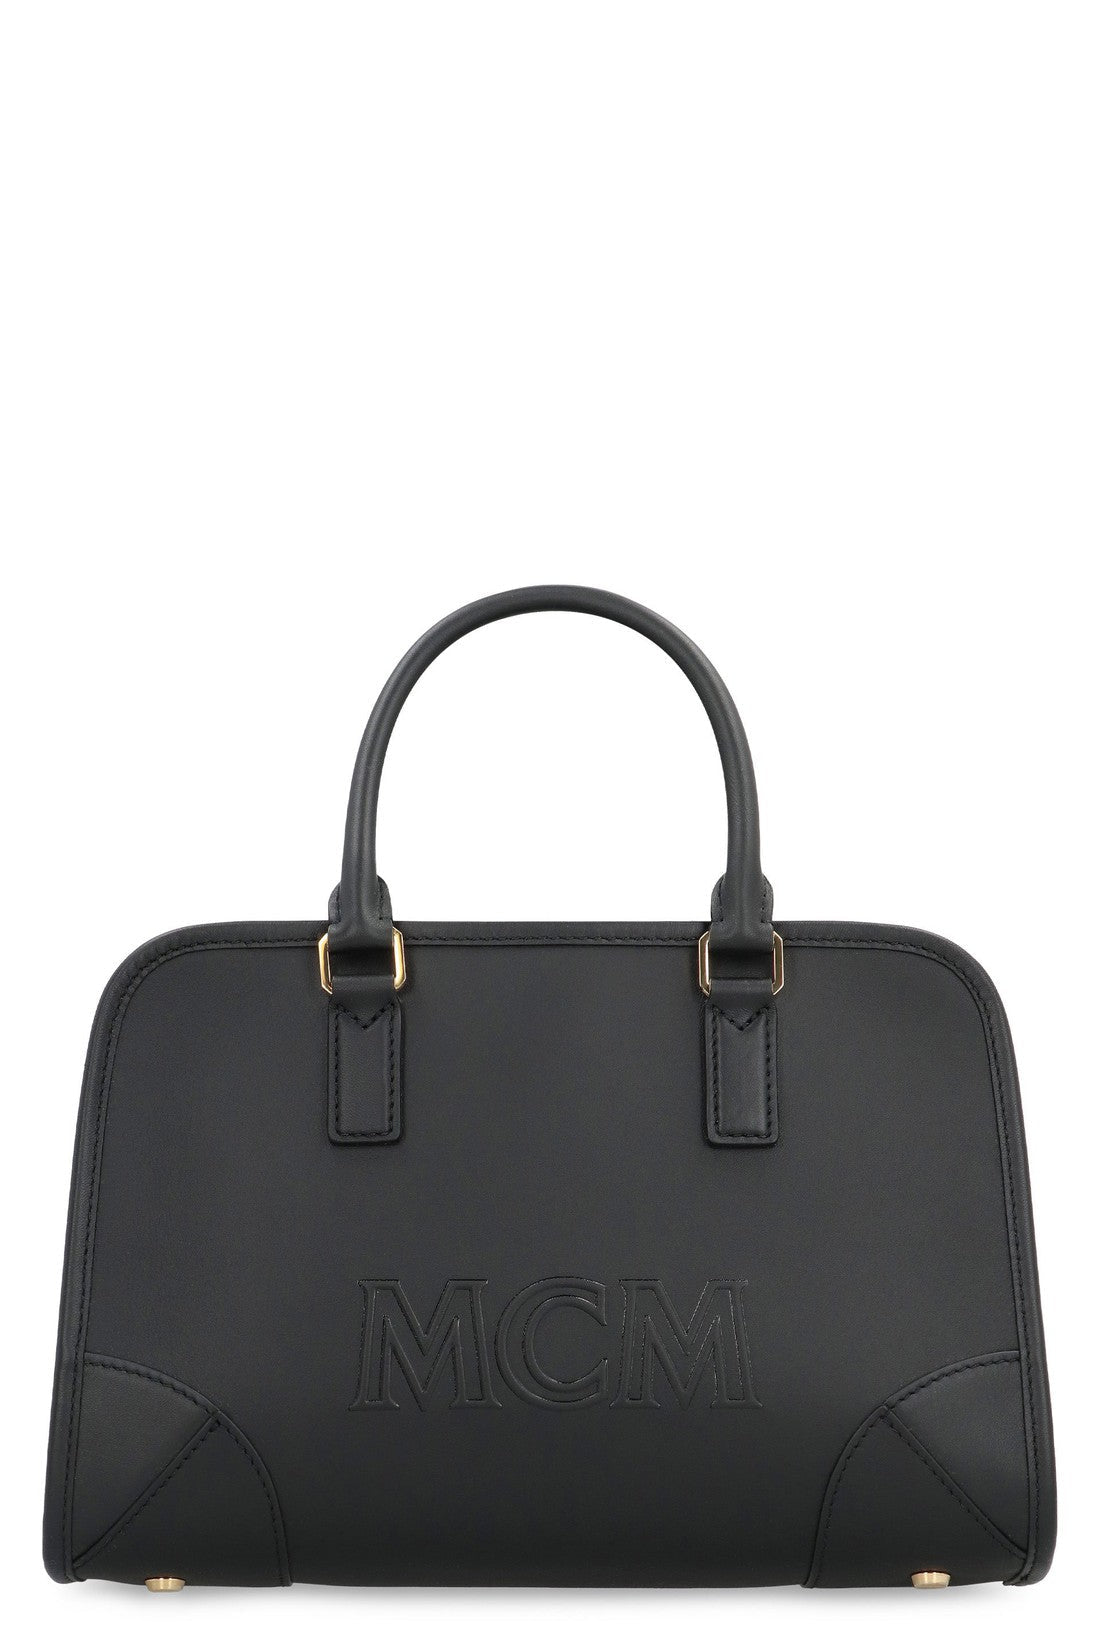 MCM-OUTLET-SALE-Aren Boston Leather handbag-ARCHIVIST